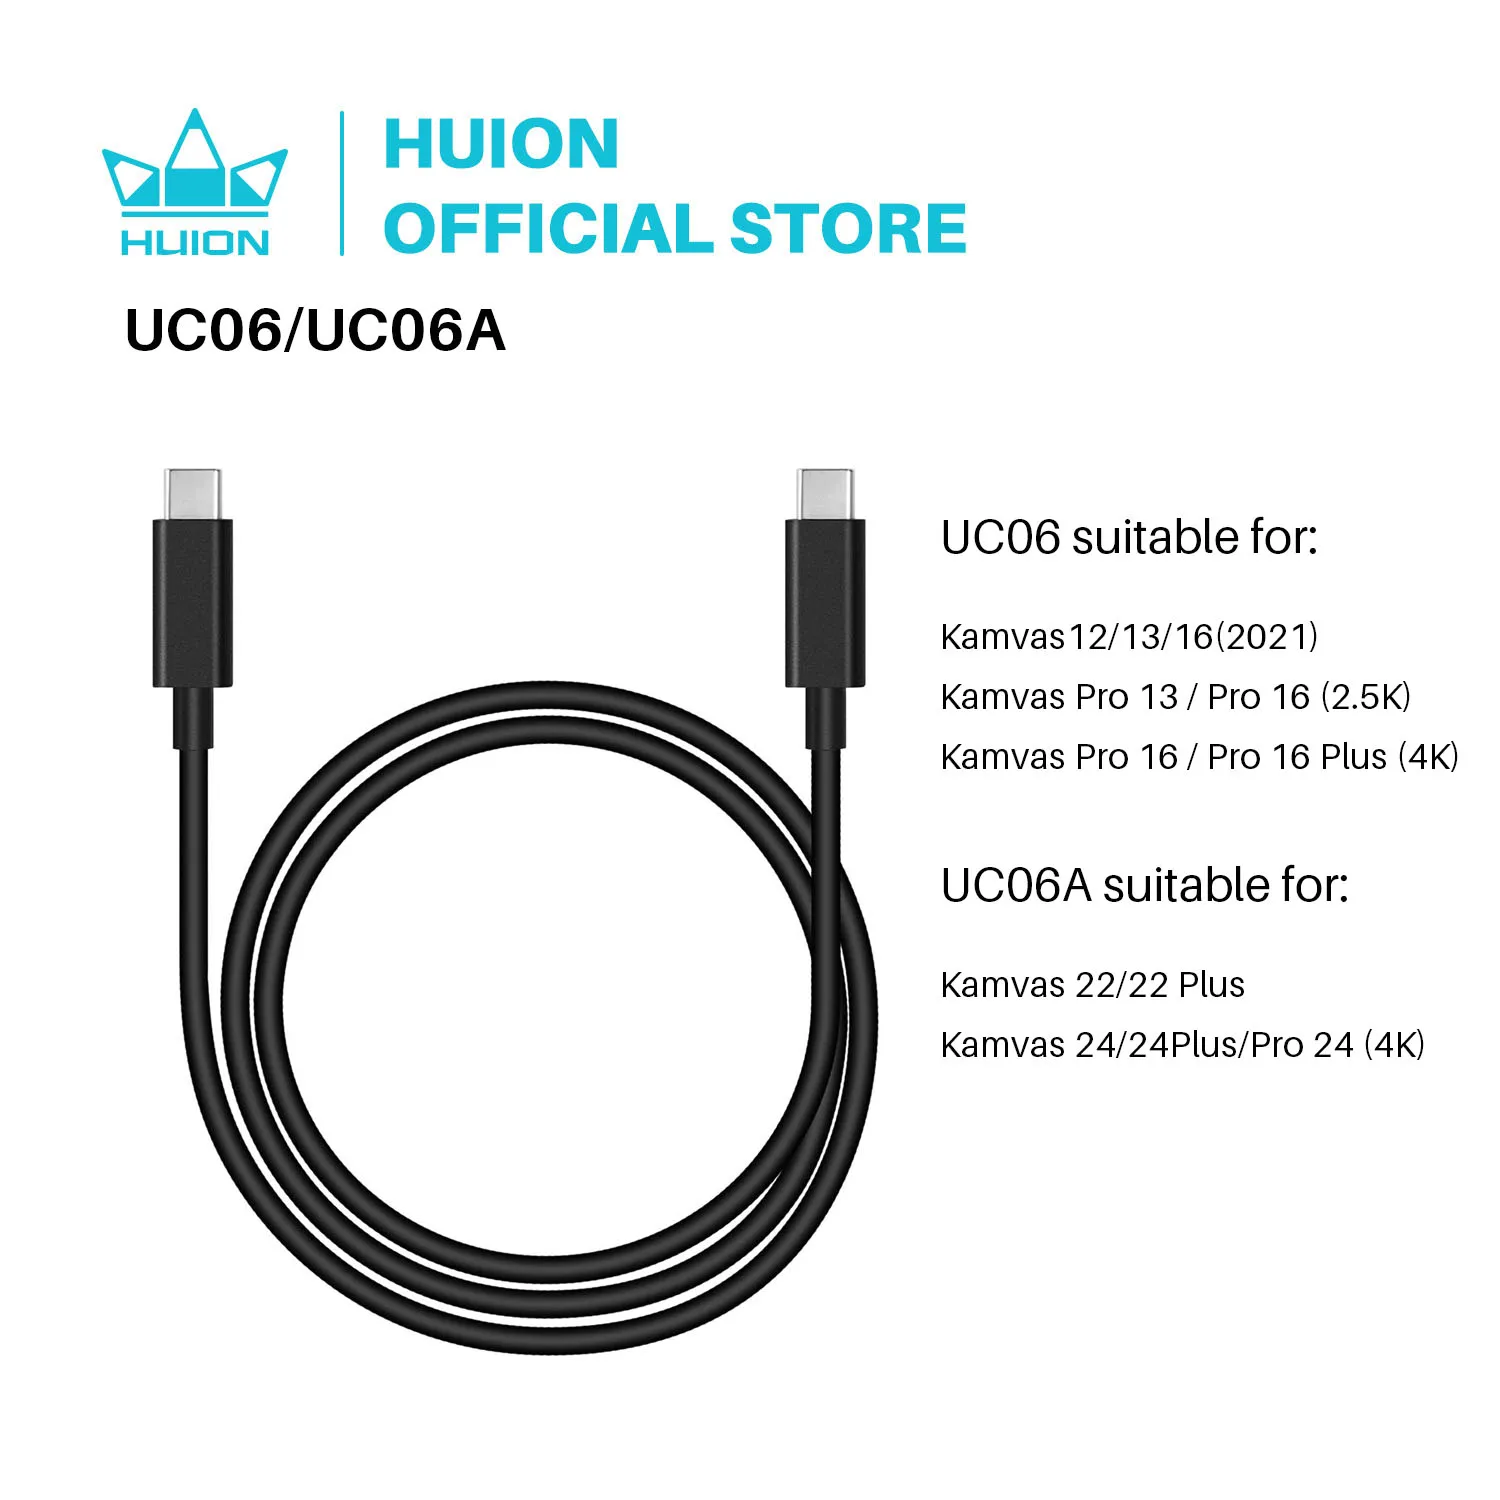 Huion UC06 / UC06A Full-Featured USB-C to USB-C Cable USB 3.1 for Kamvas 13 / Kamvas 22 / Kamvas 22 Plus